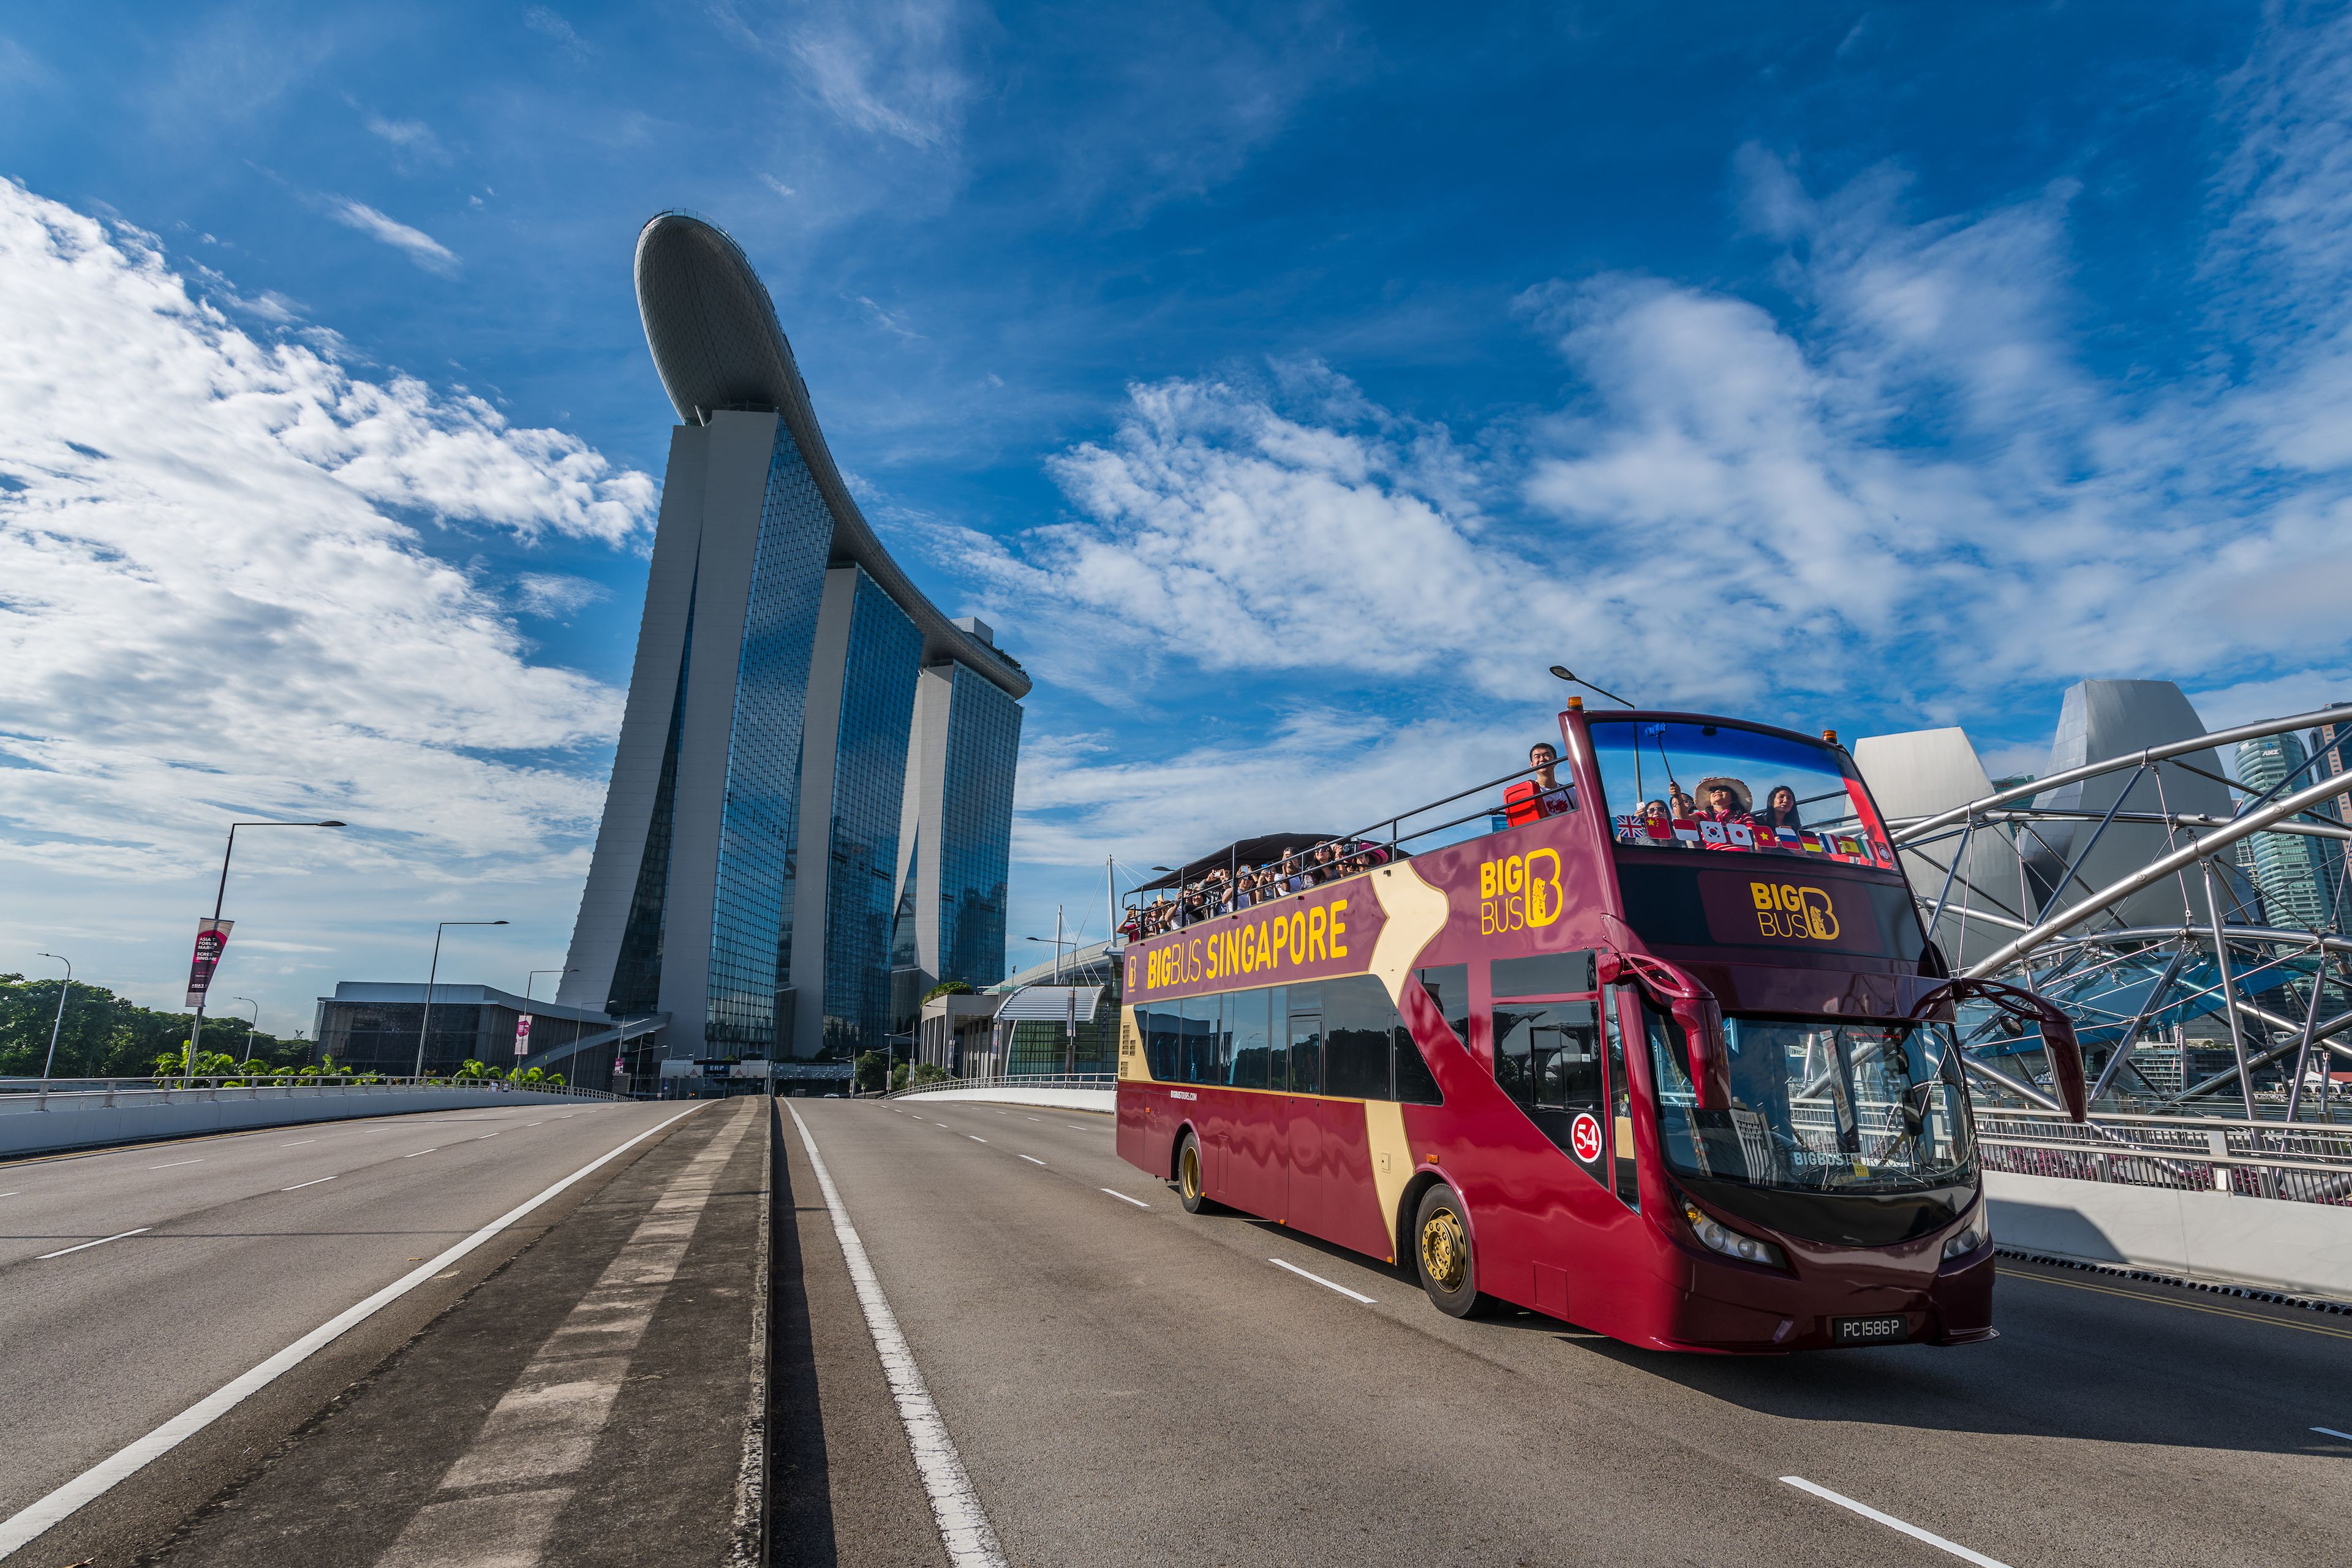 big bus tour singapore review